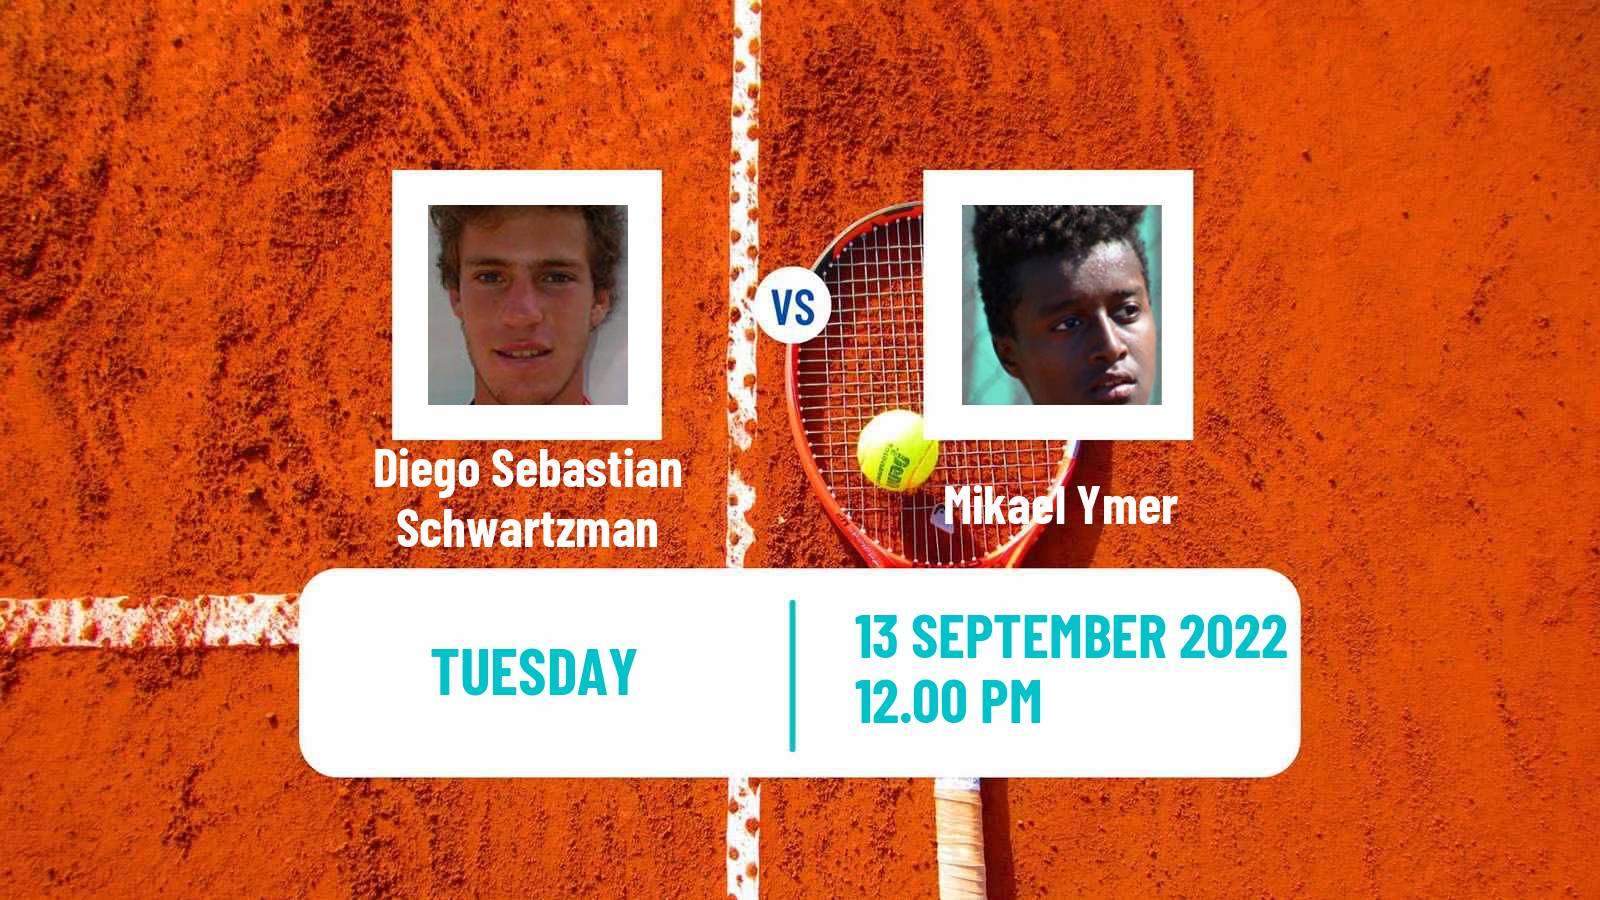 Tennis Davis Cup World Group Diego Sebastian Schwartzman - Mikael Ymer